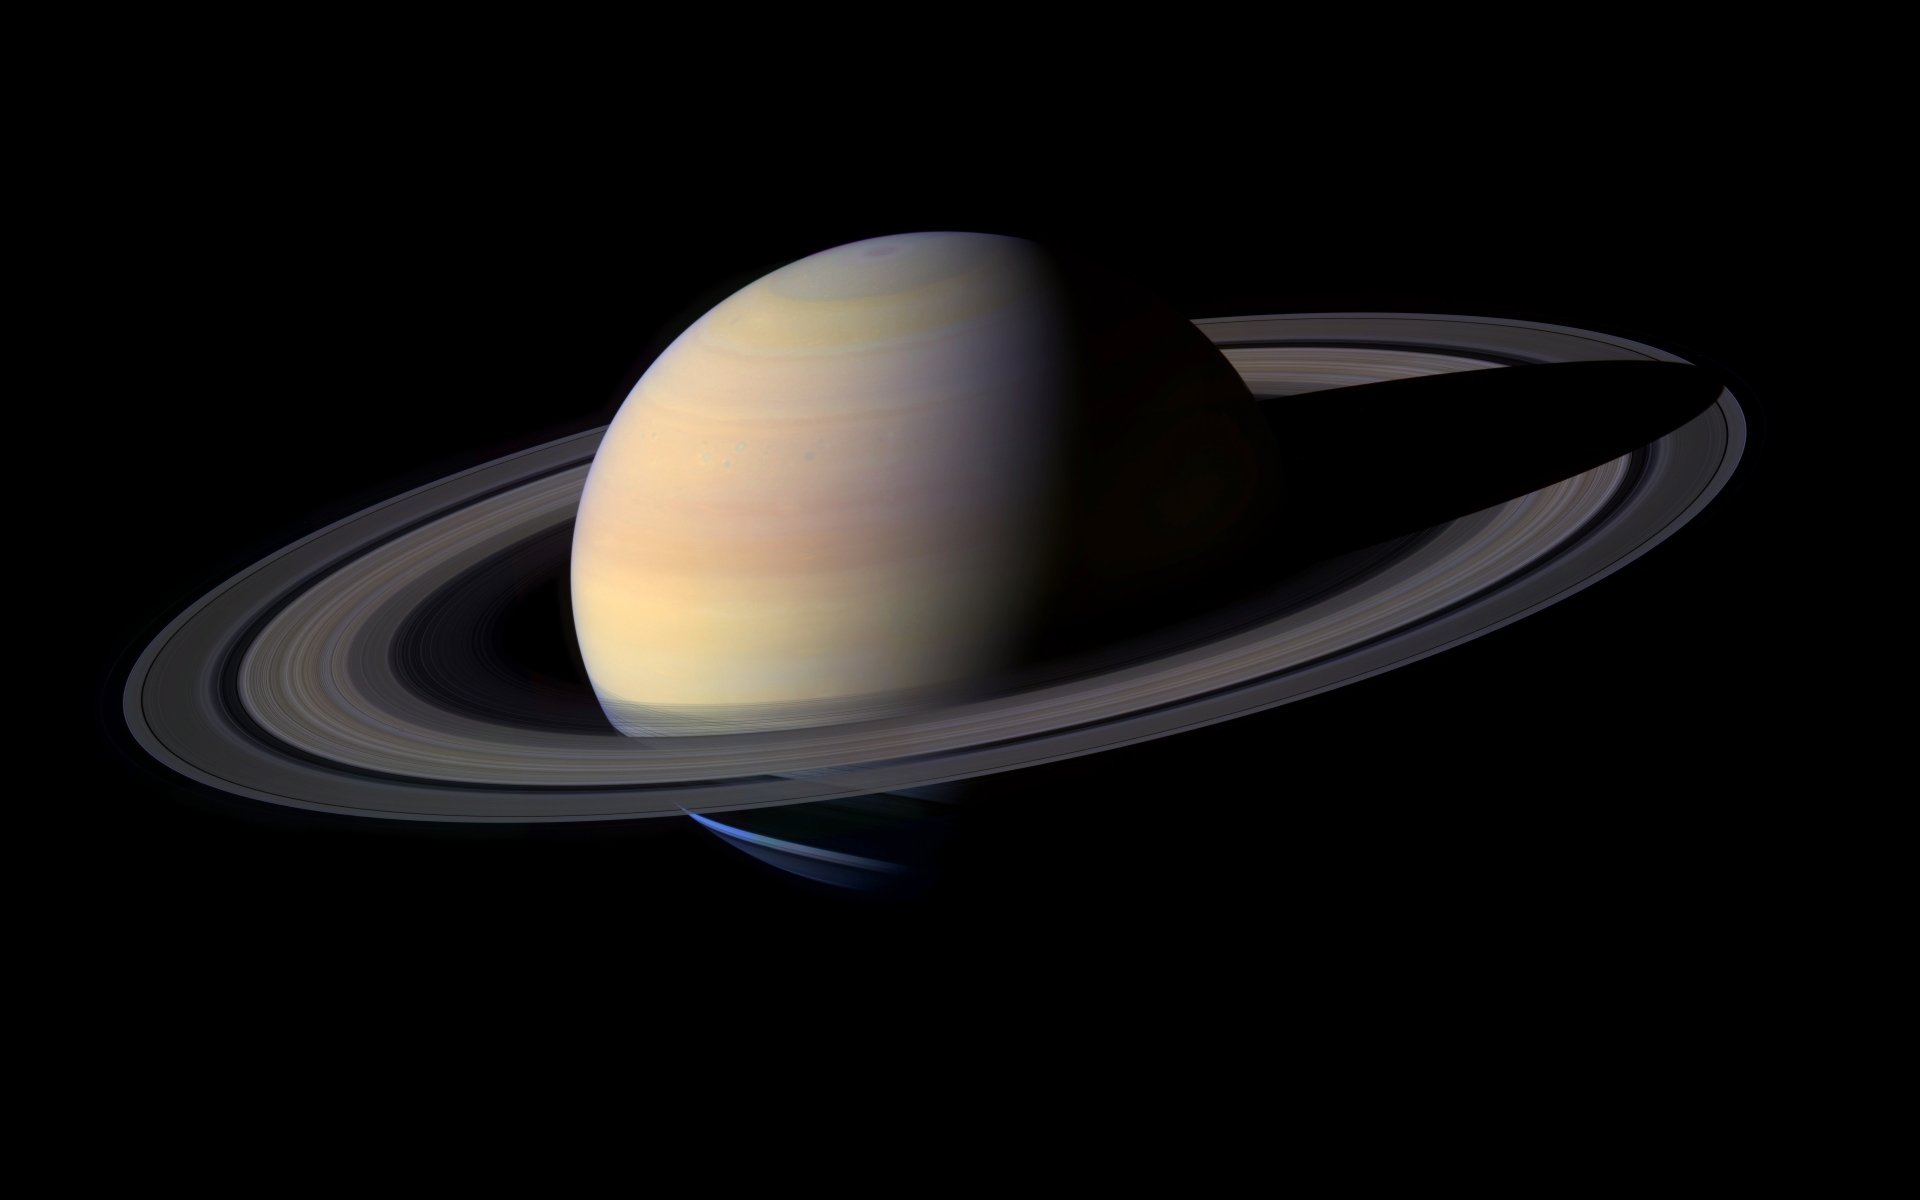 19+] Saturn 8k Wallpapers - WallpaperSafari